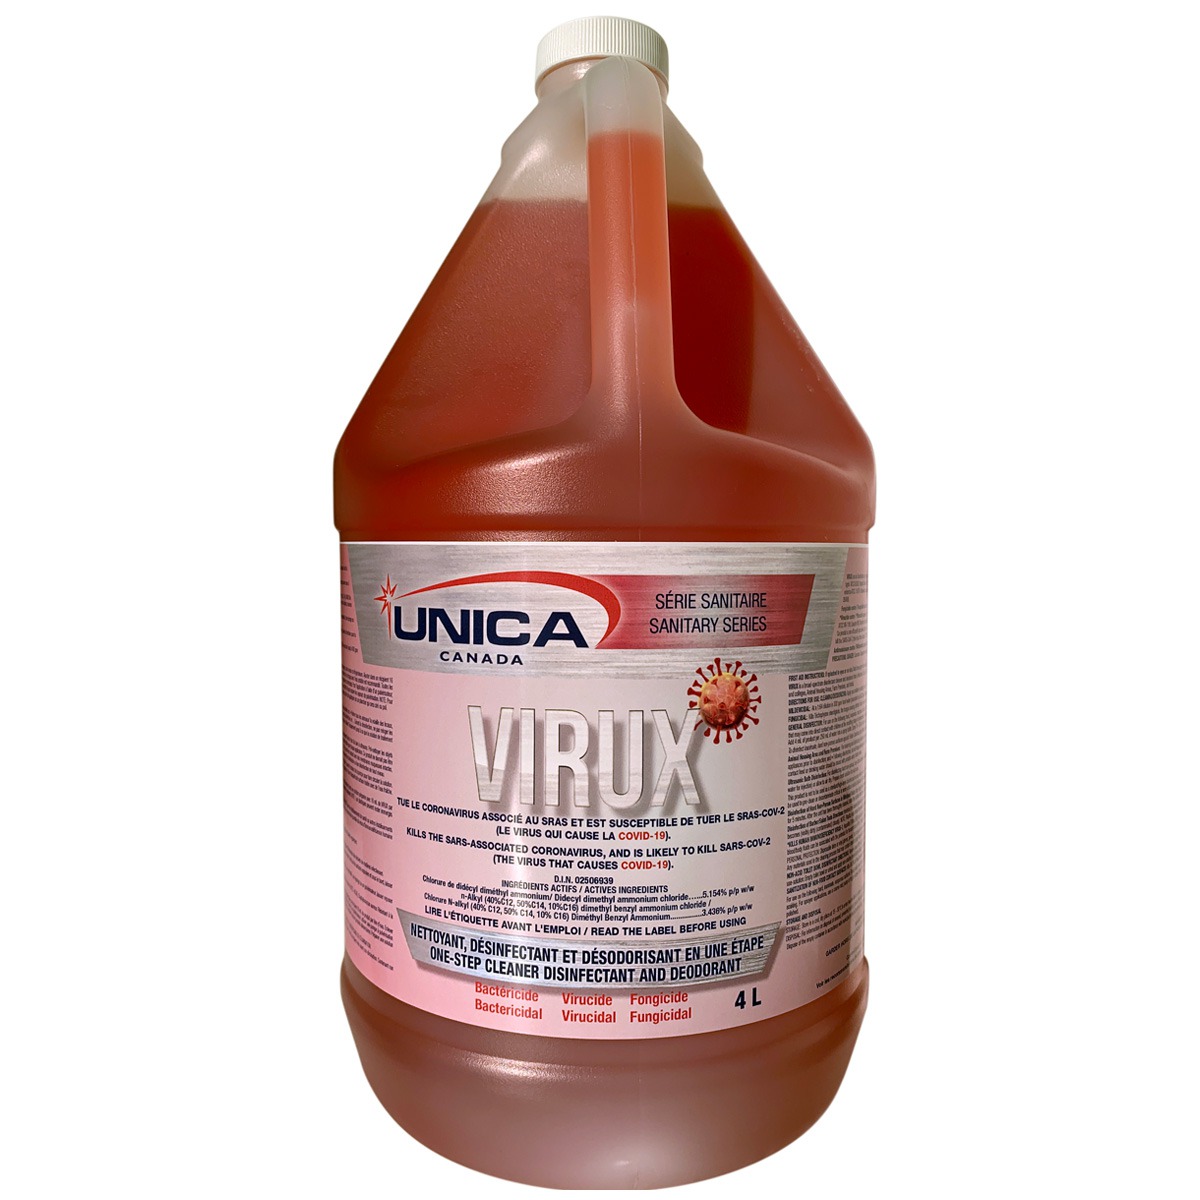 Virux – DIN 02506939